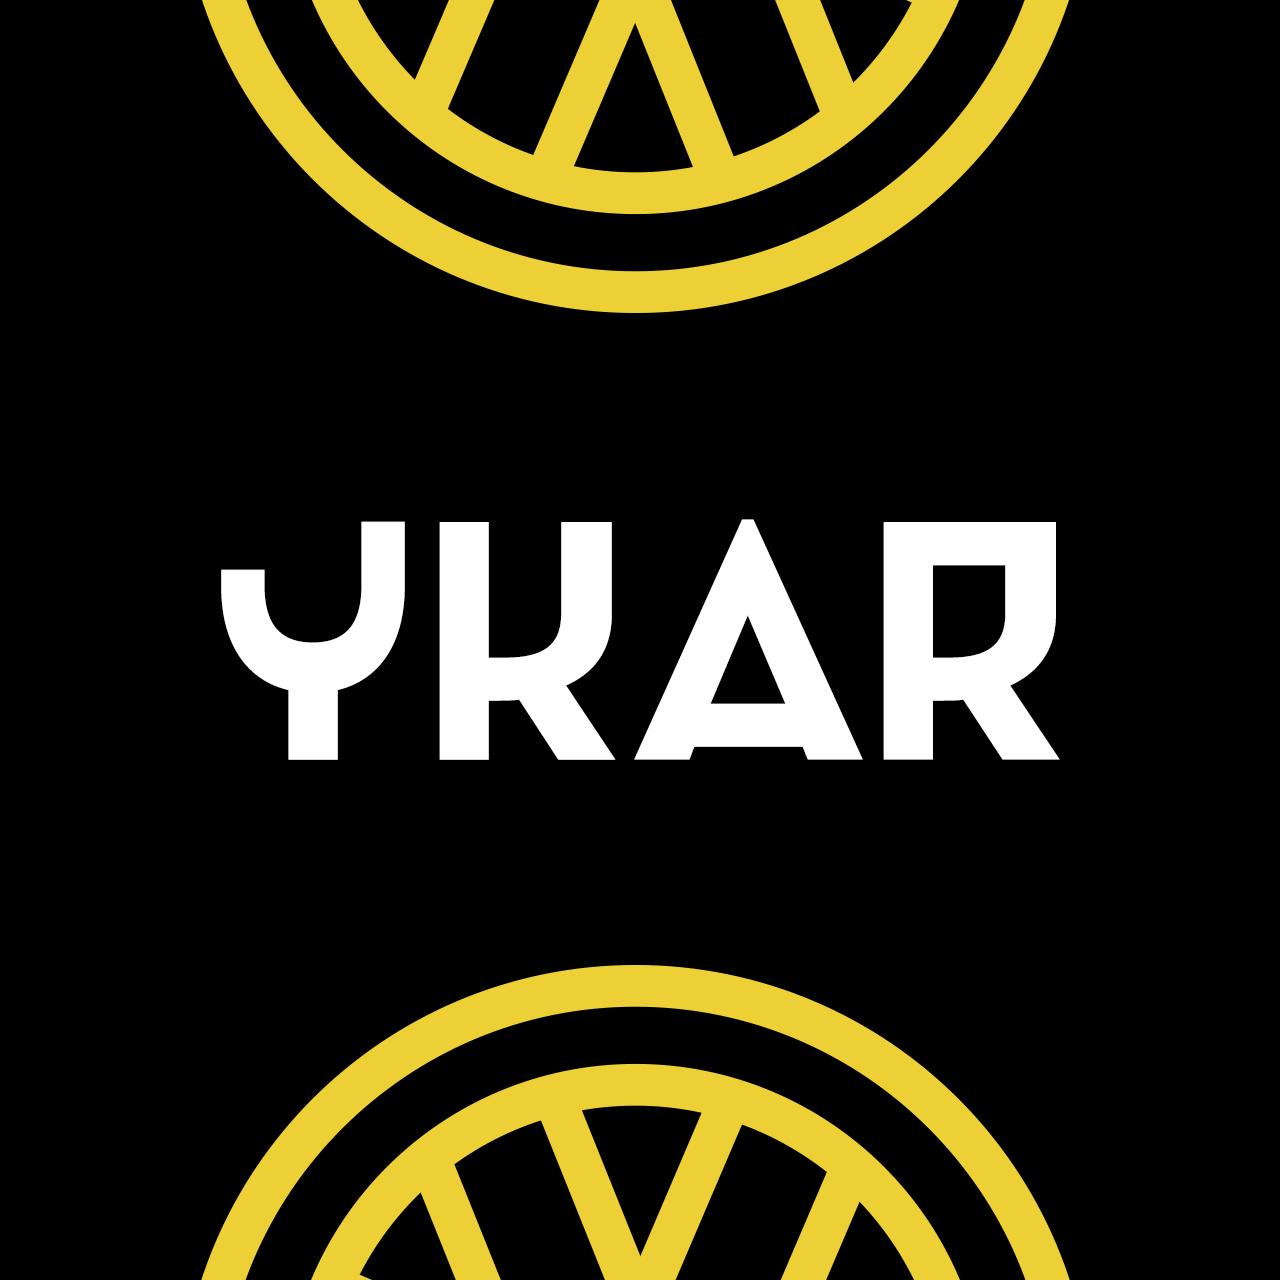 Ykar-gumroad